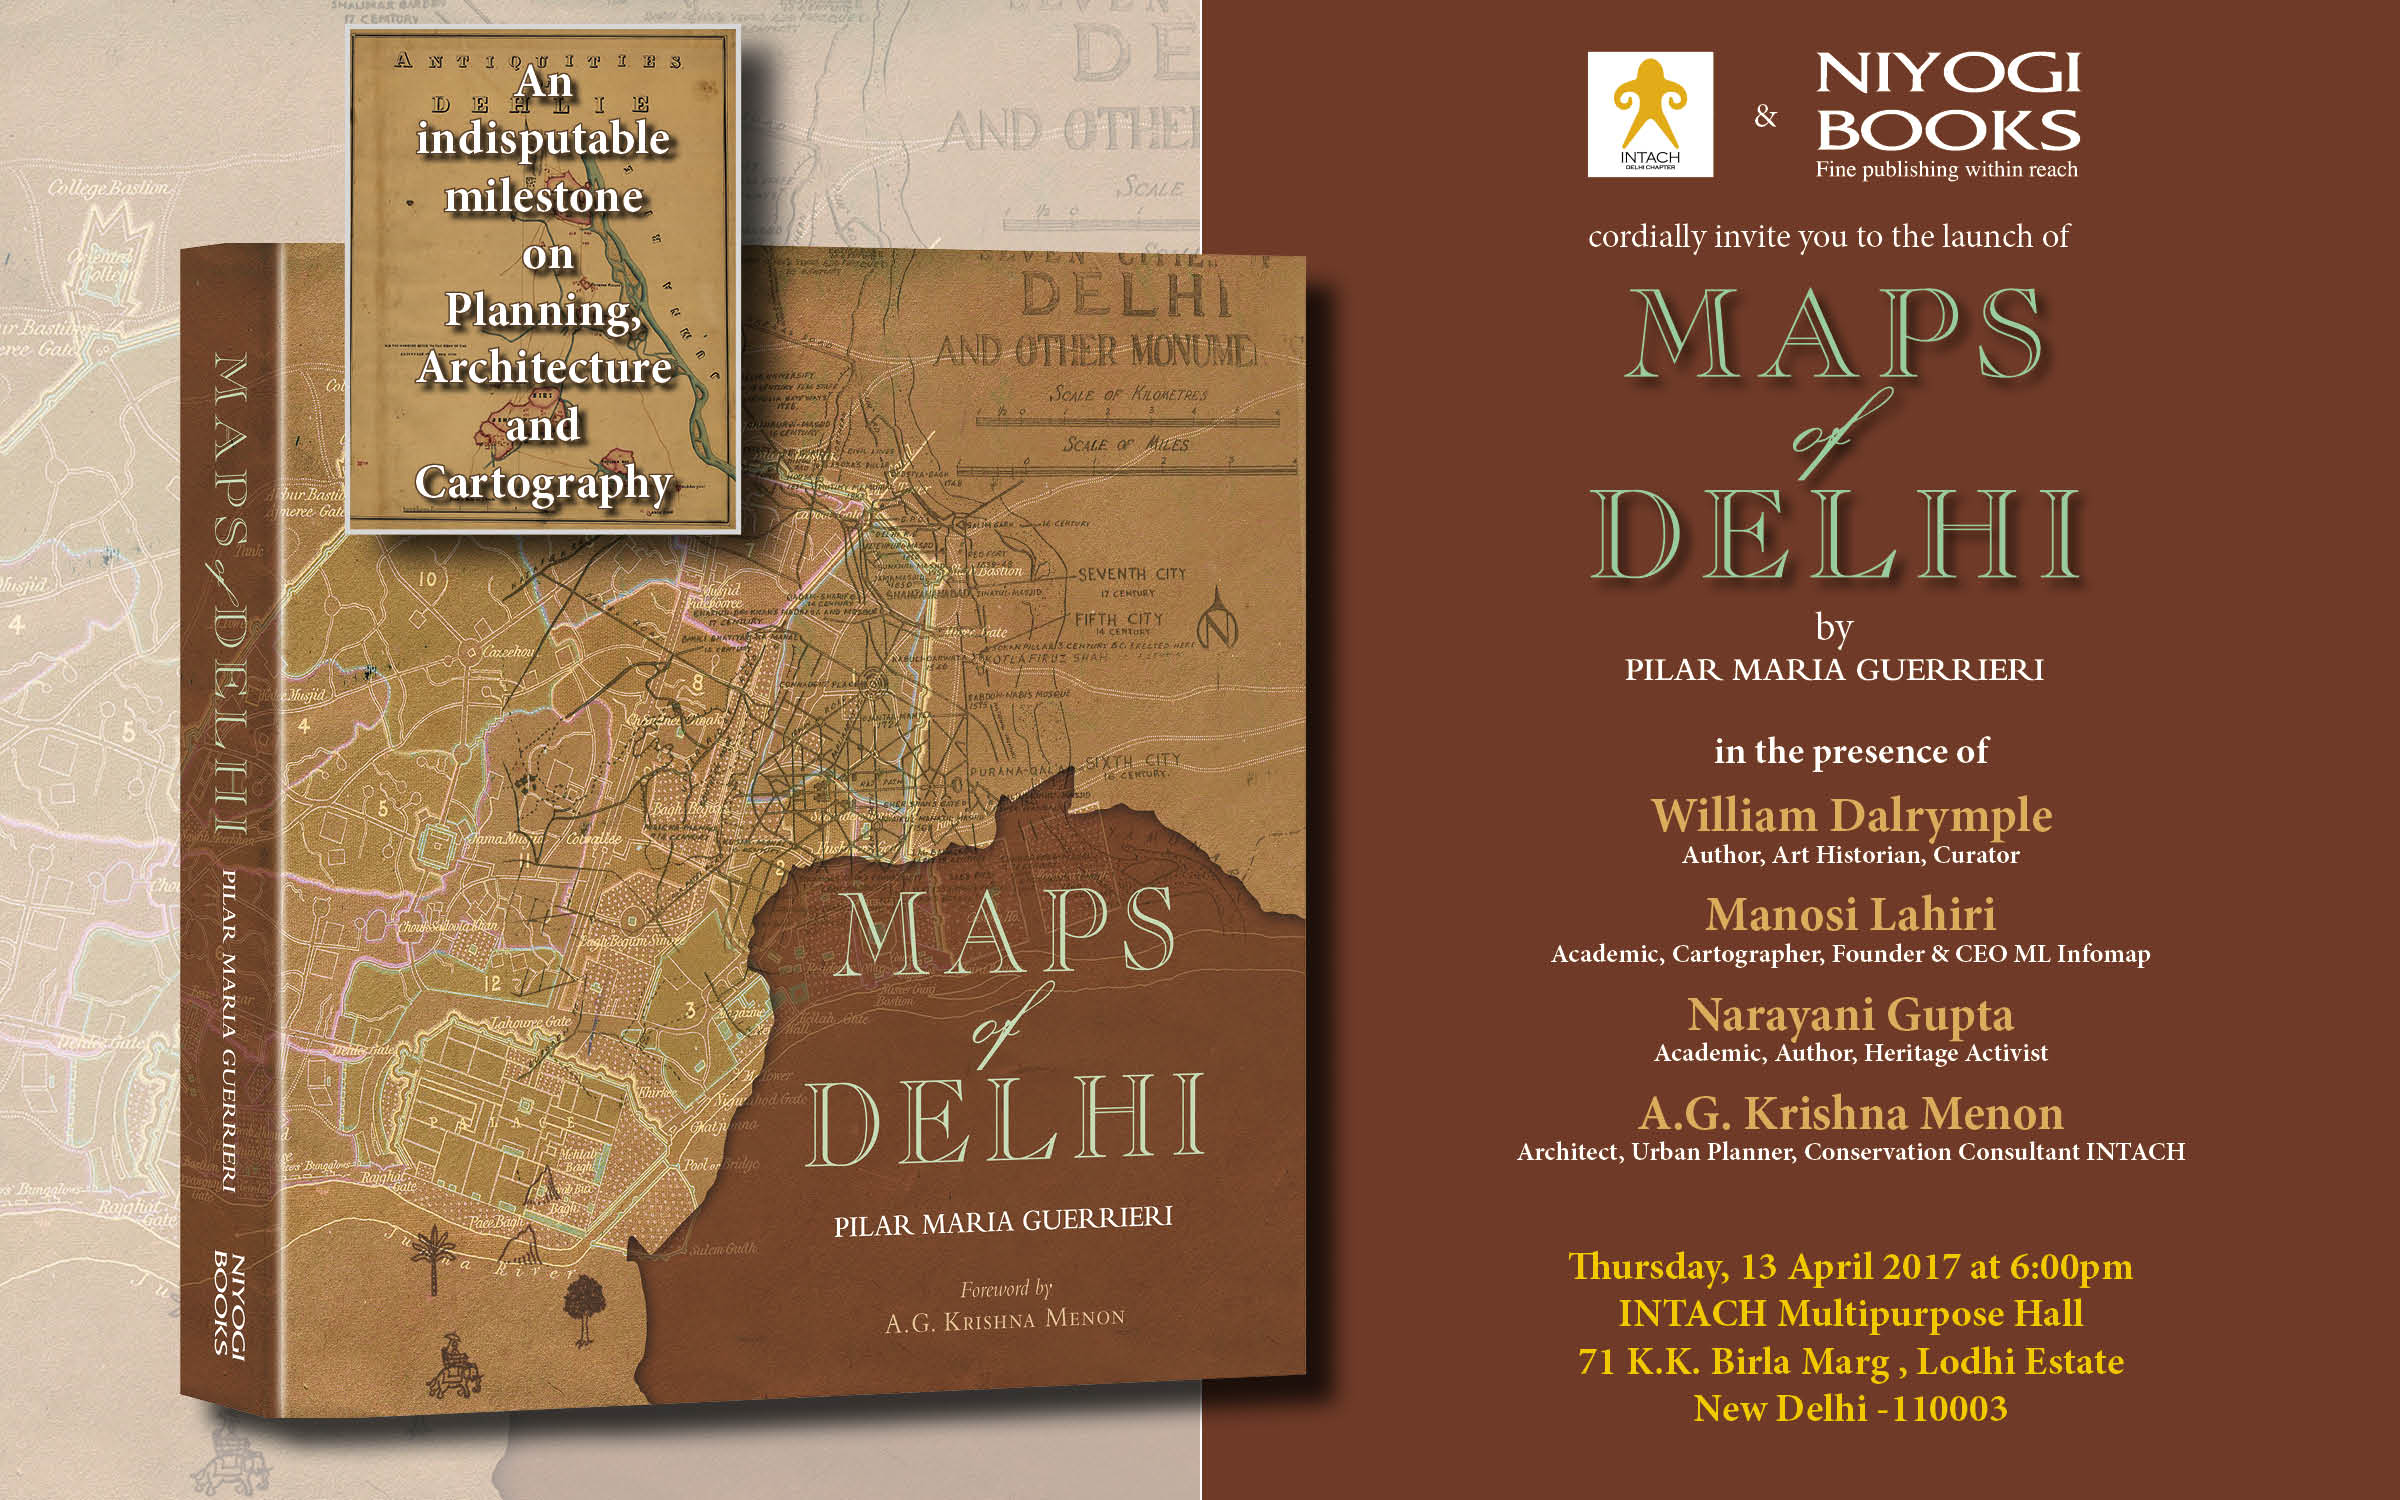 Book Launch of Maps of Delhi, New Delhi, Delhi, India